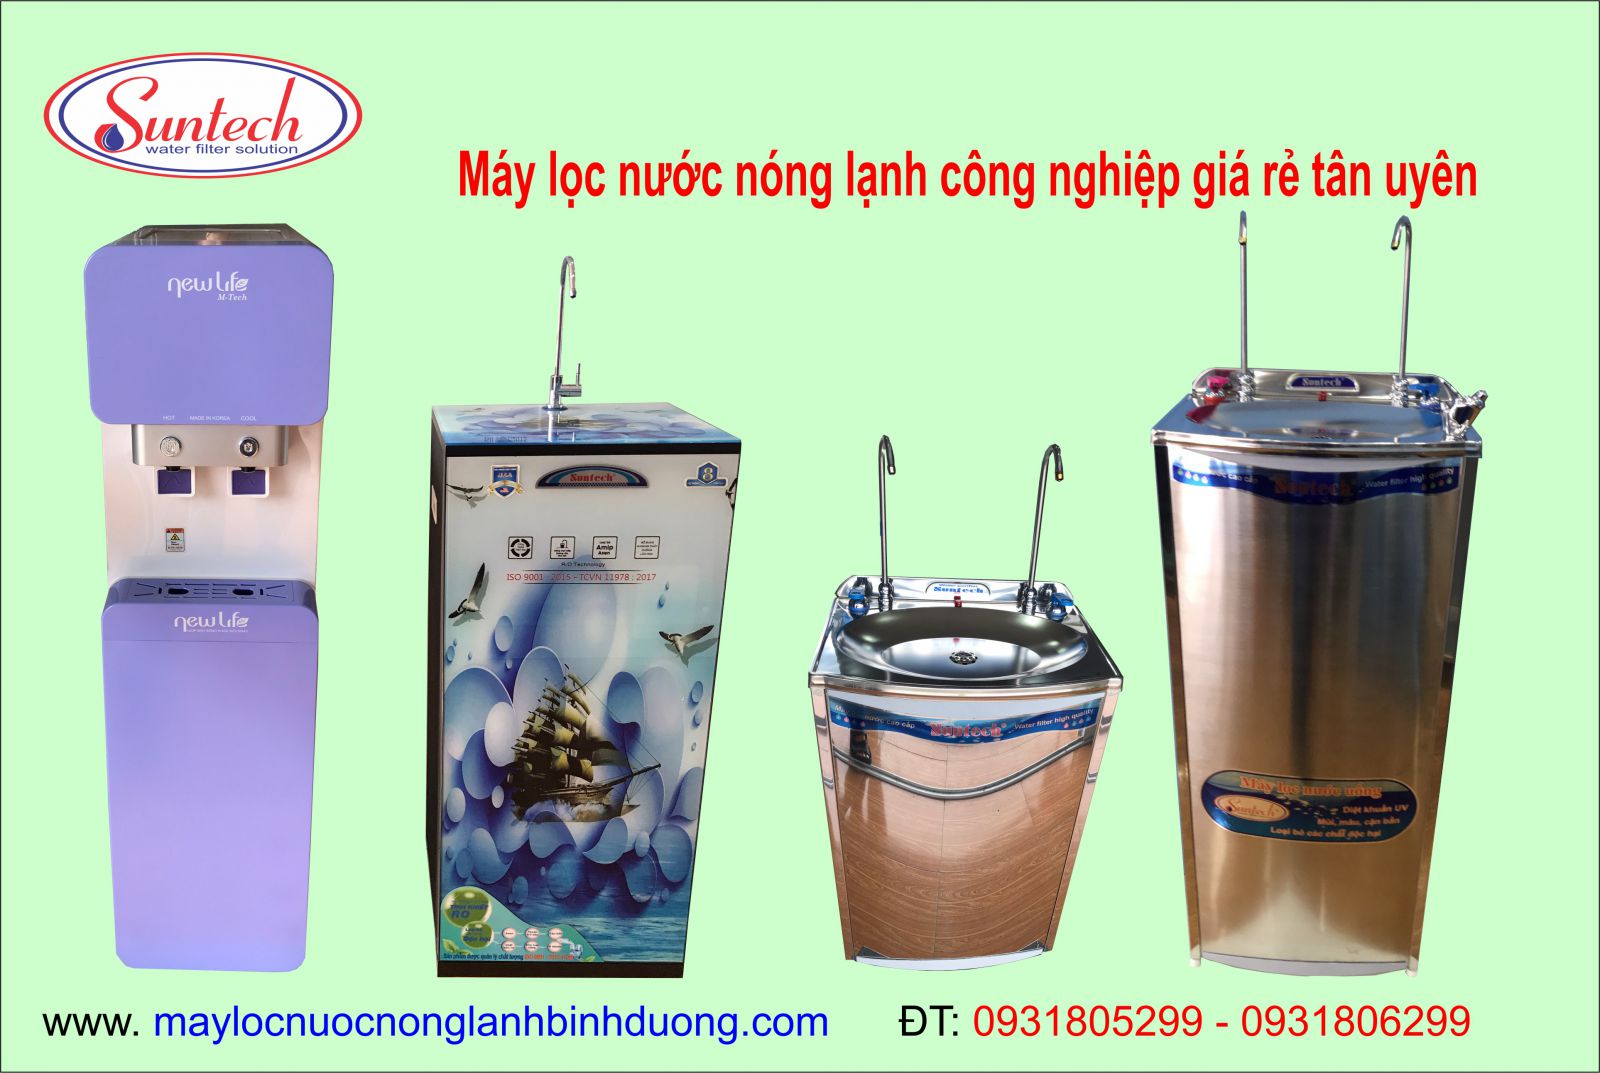 May-loc-nuoc-nong-lanh-cong-nghiep-gia-re-tan-uyen